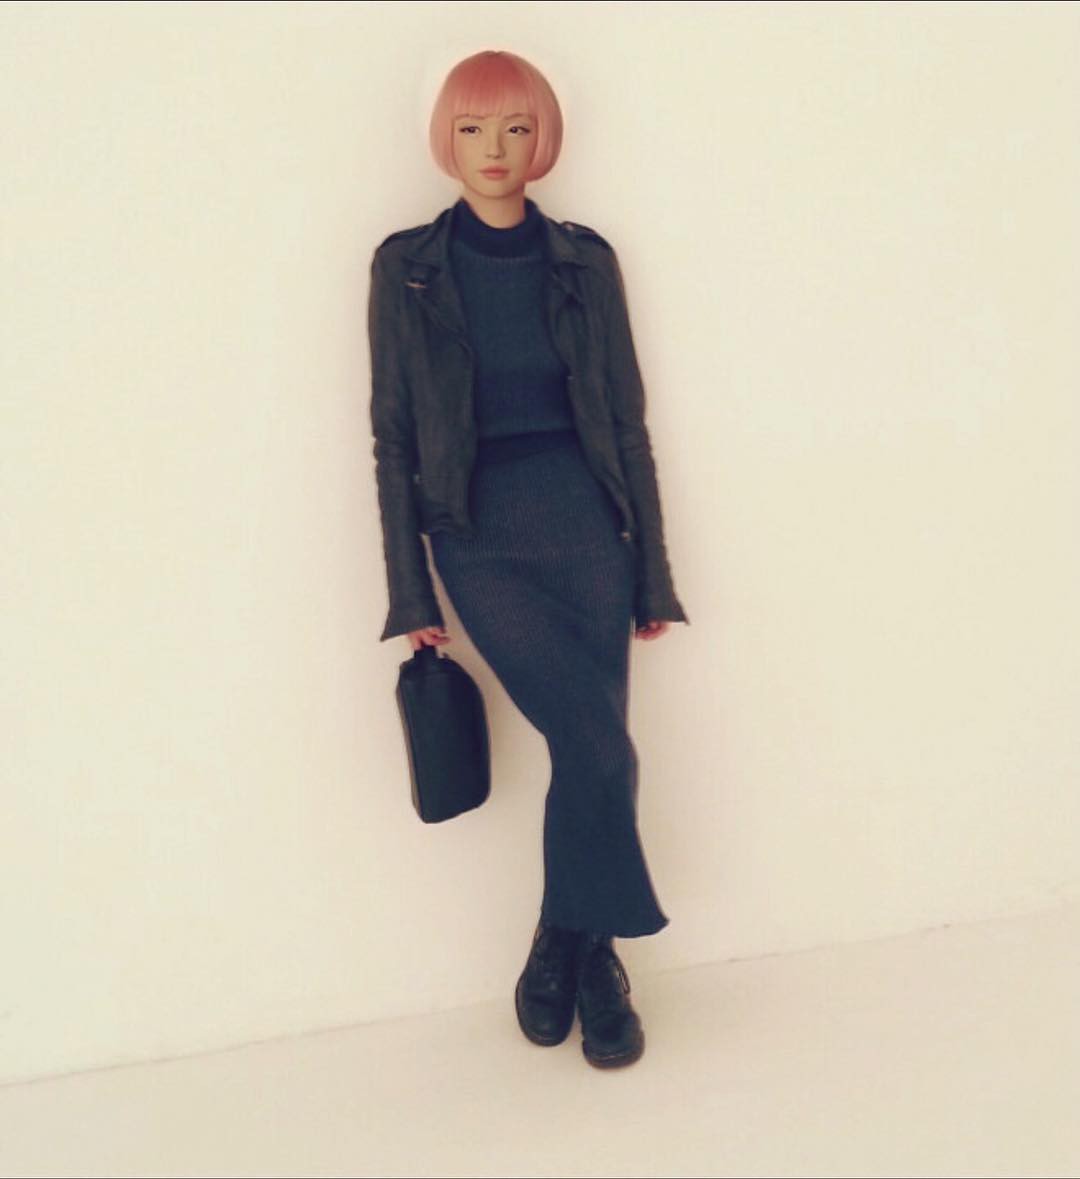 Xinh đẹp và quyến rũ, cô gái tóc hồng mới nổi trên Instagram Nhật hóa ra là người mẫu ảo! - Ảnh 13.